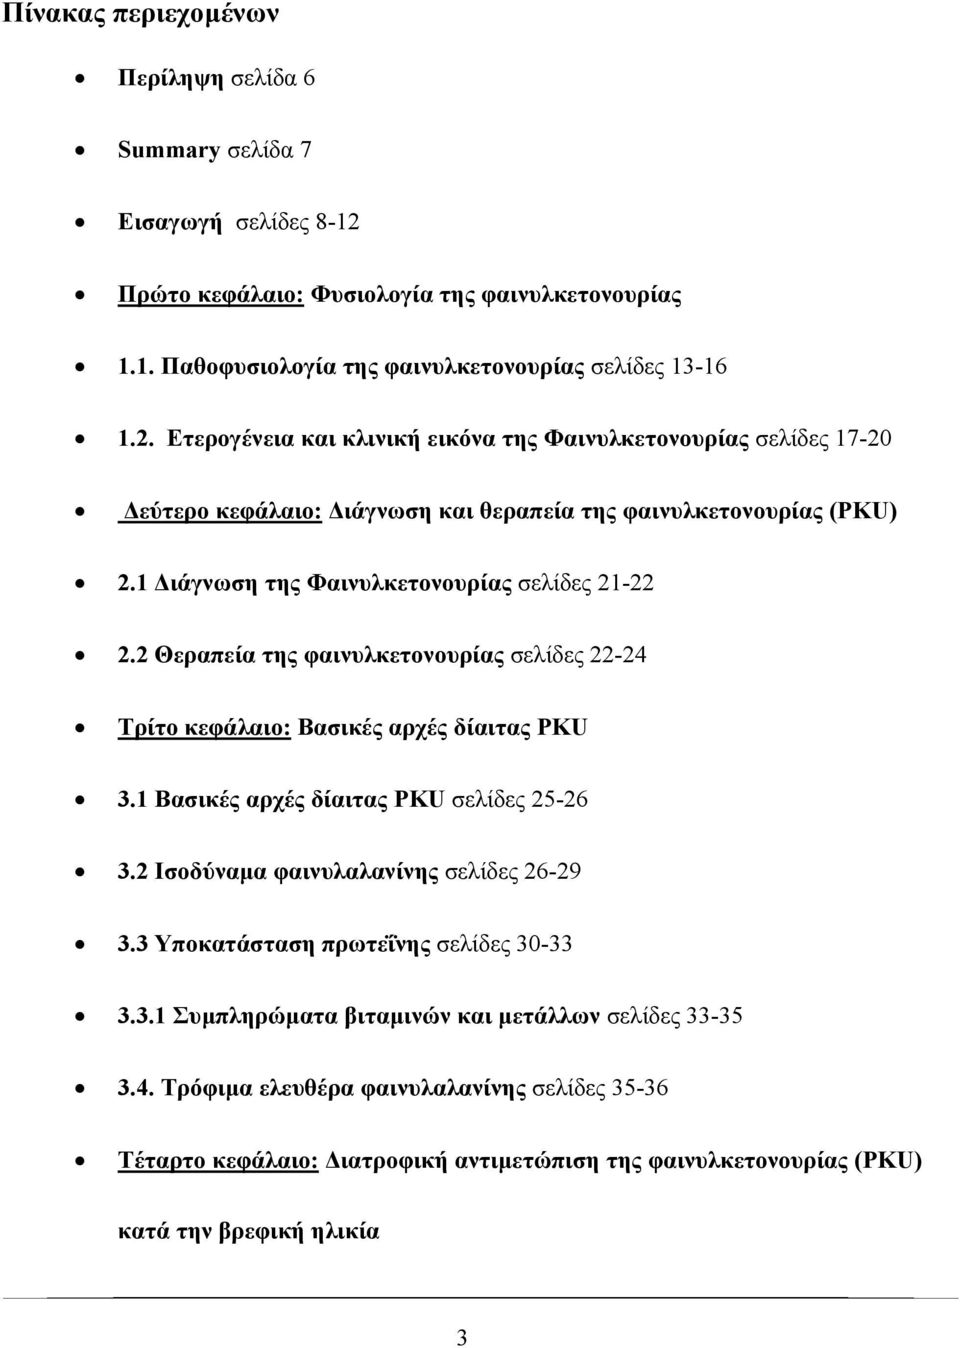 Ετερογένεια και κλινική εικόνα της Φαινυλκετονουρίας σελίδες 17-20 εύτερο κεφάλαιο: ιάγνωση και θεραπεία της φαινυλκετονουρίας (PKU) 2.1 ιάγνωση της Φαινυλκετονουρίας σελίδες 21-22 2.